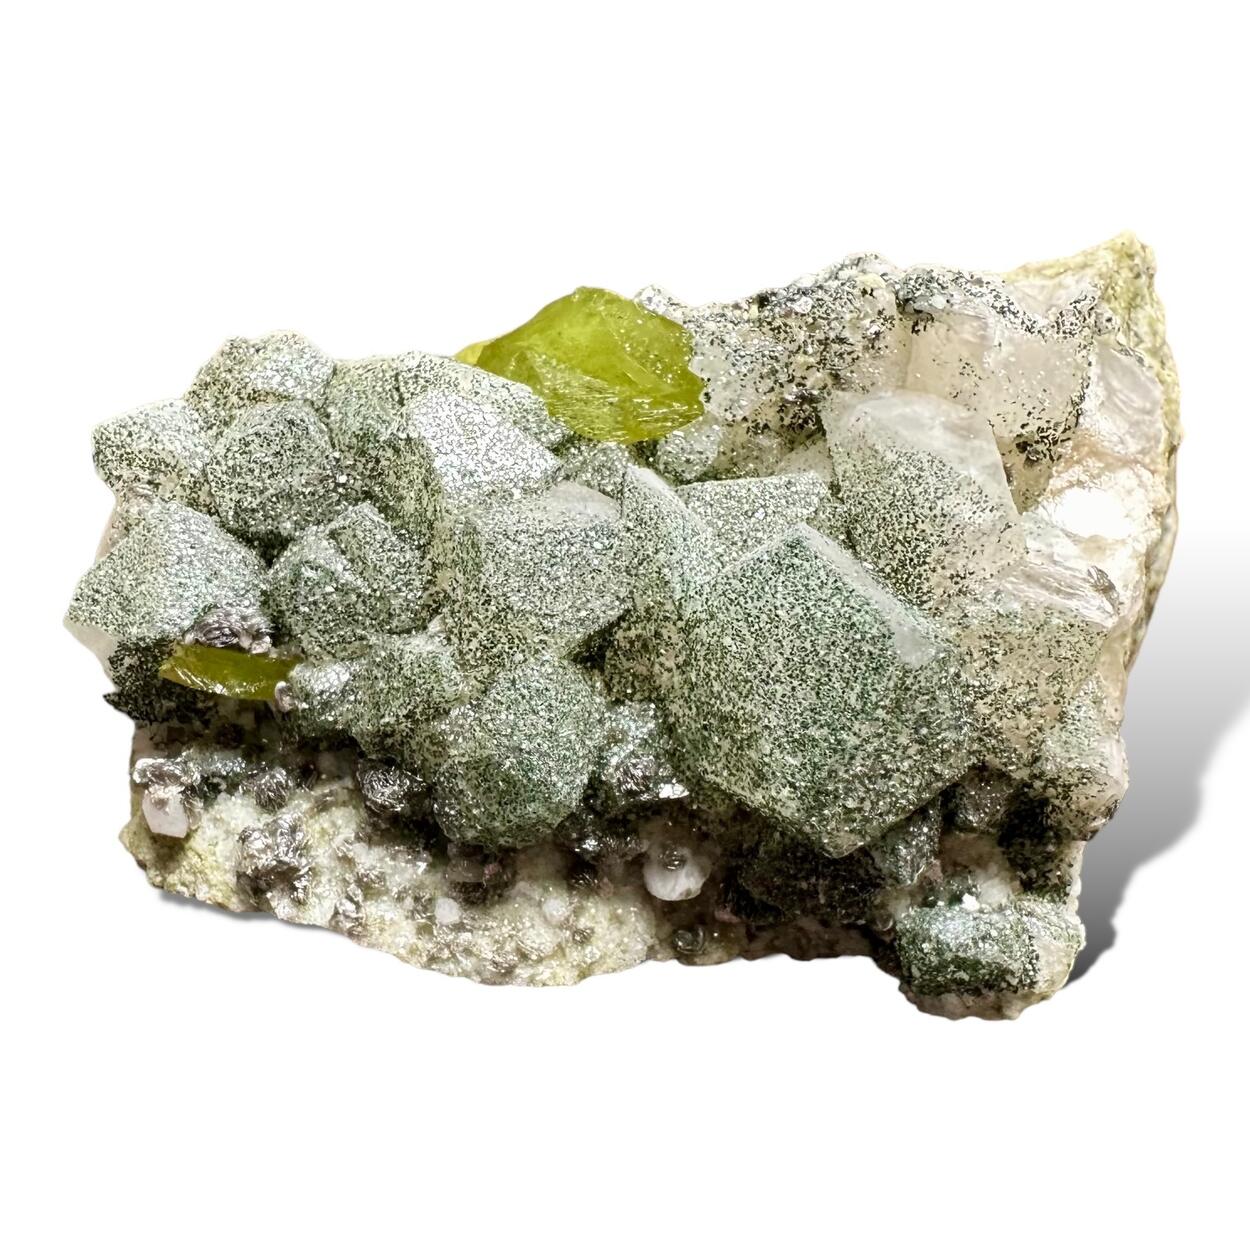 Titanite & Calcite With Muscovite Pericline & Chlorite